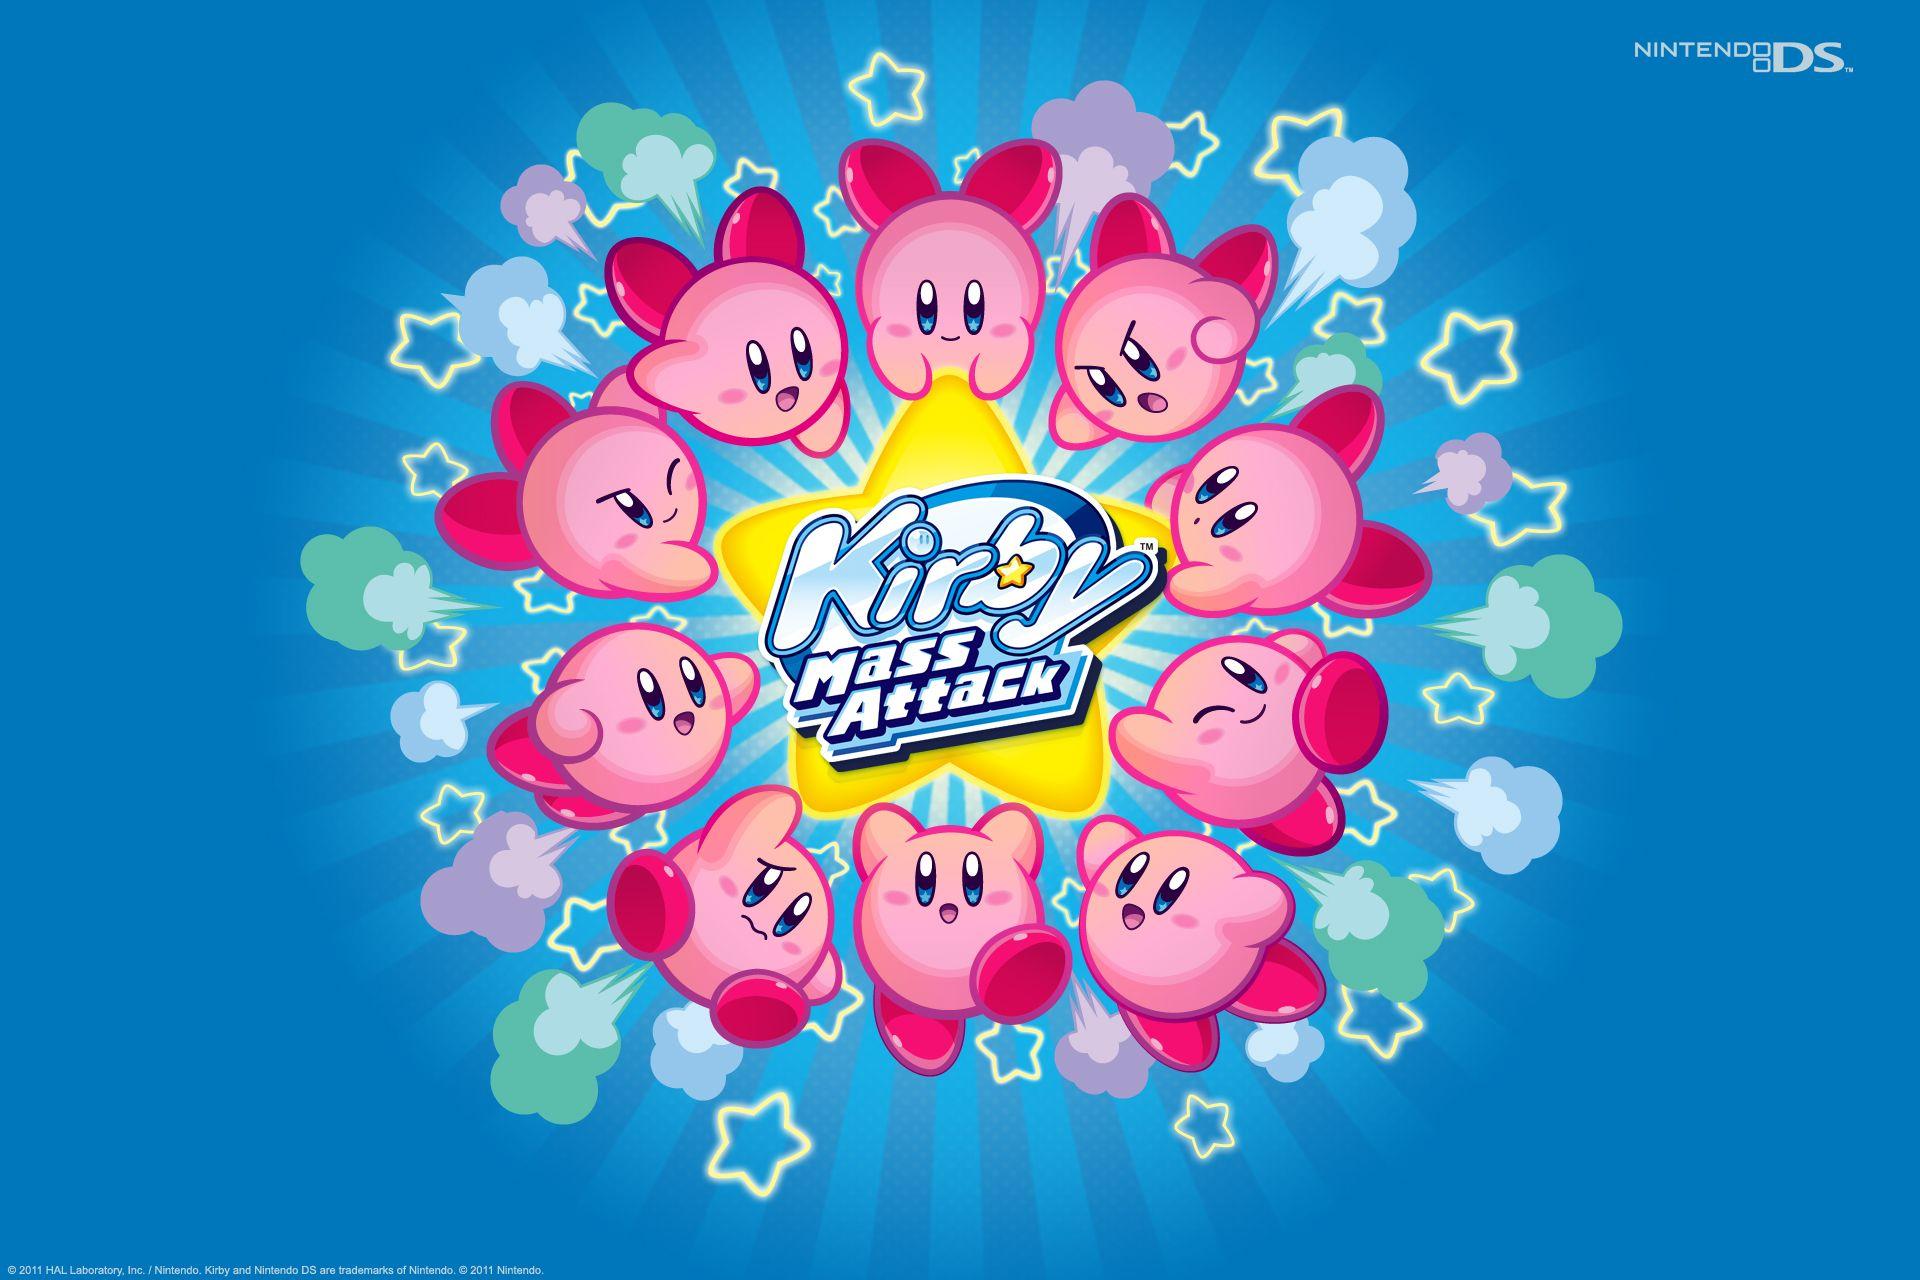 Kirby Super Star Wallpaper, PC Kirby Super Star Wallpaper Most